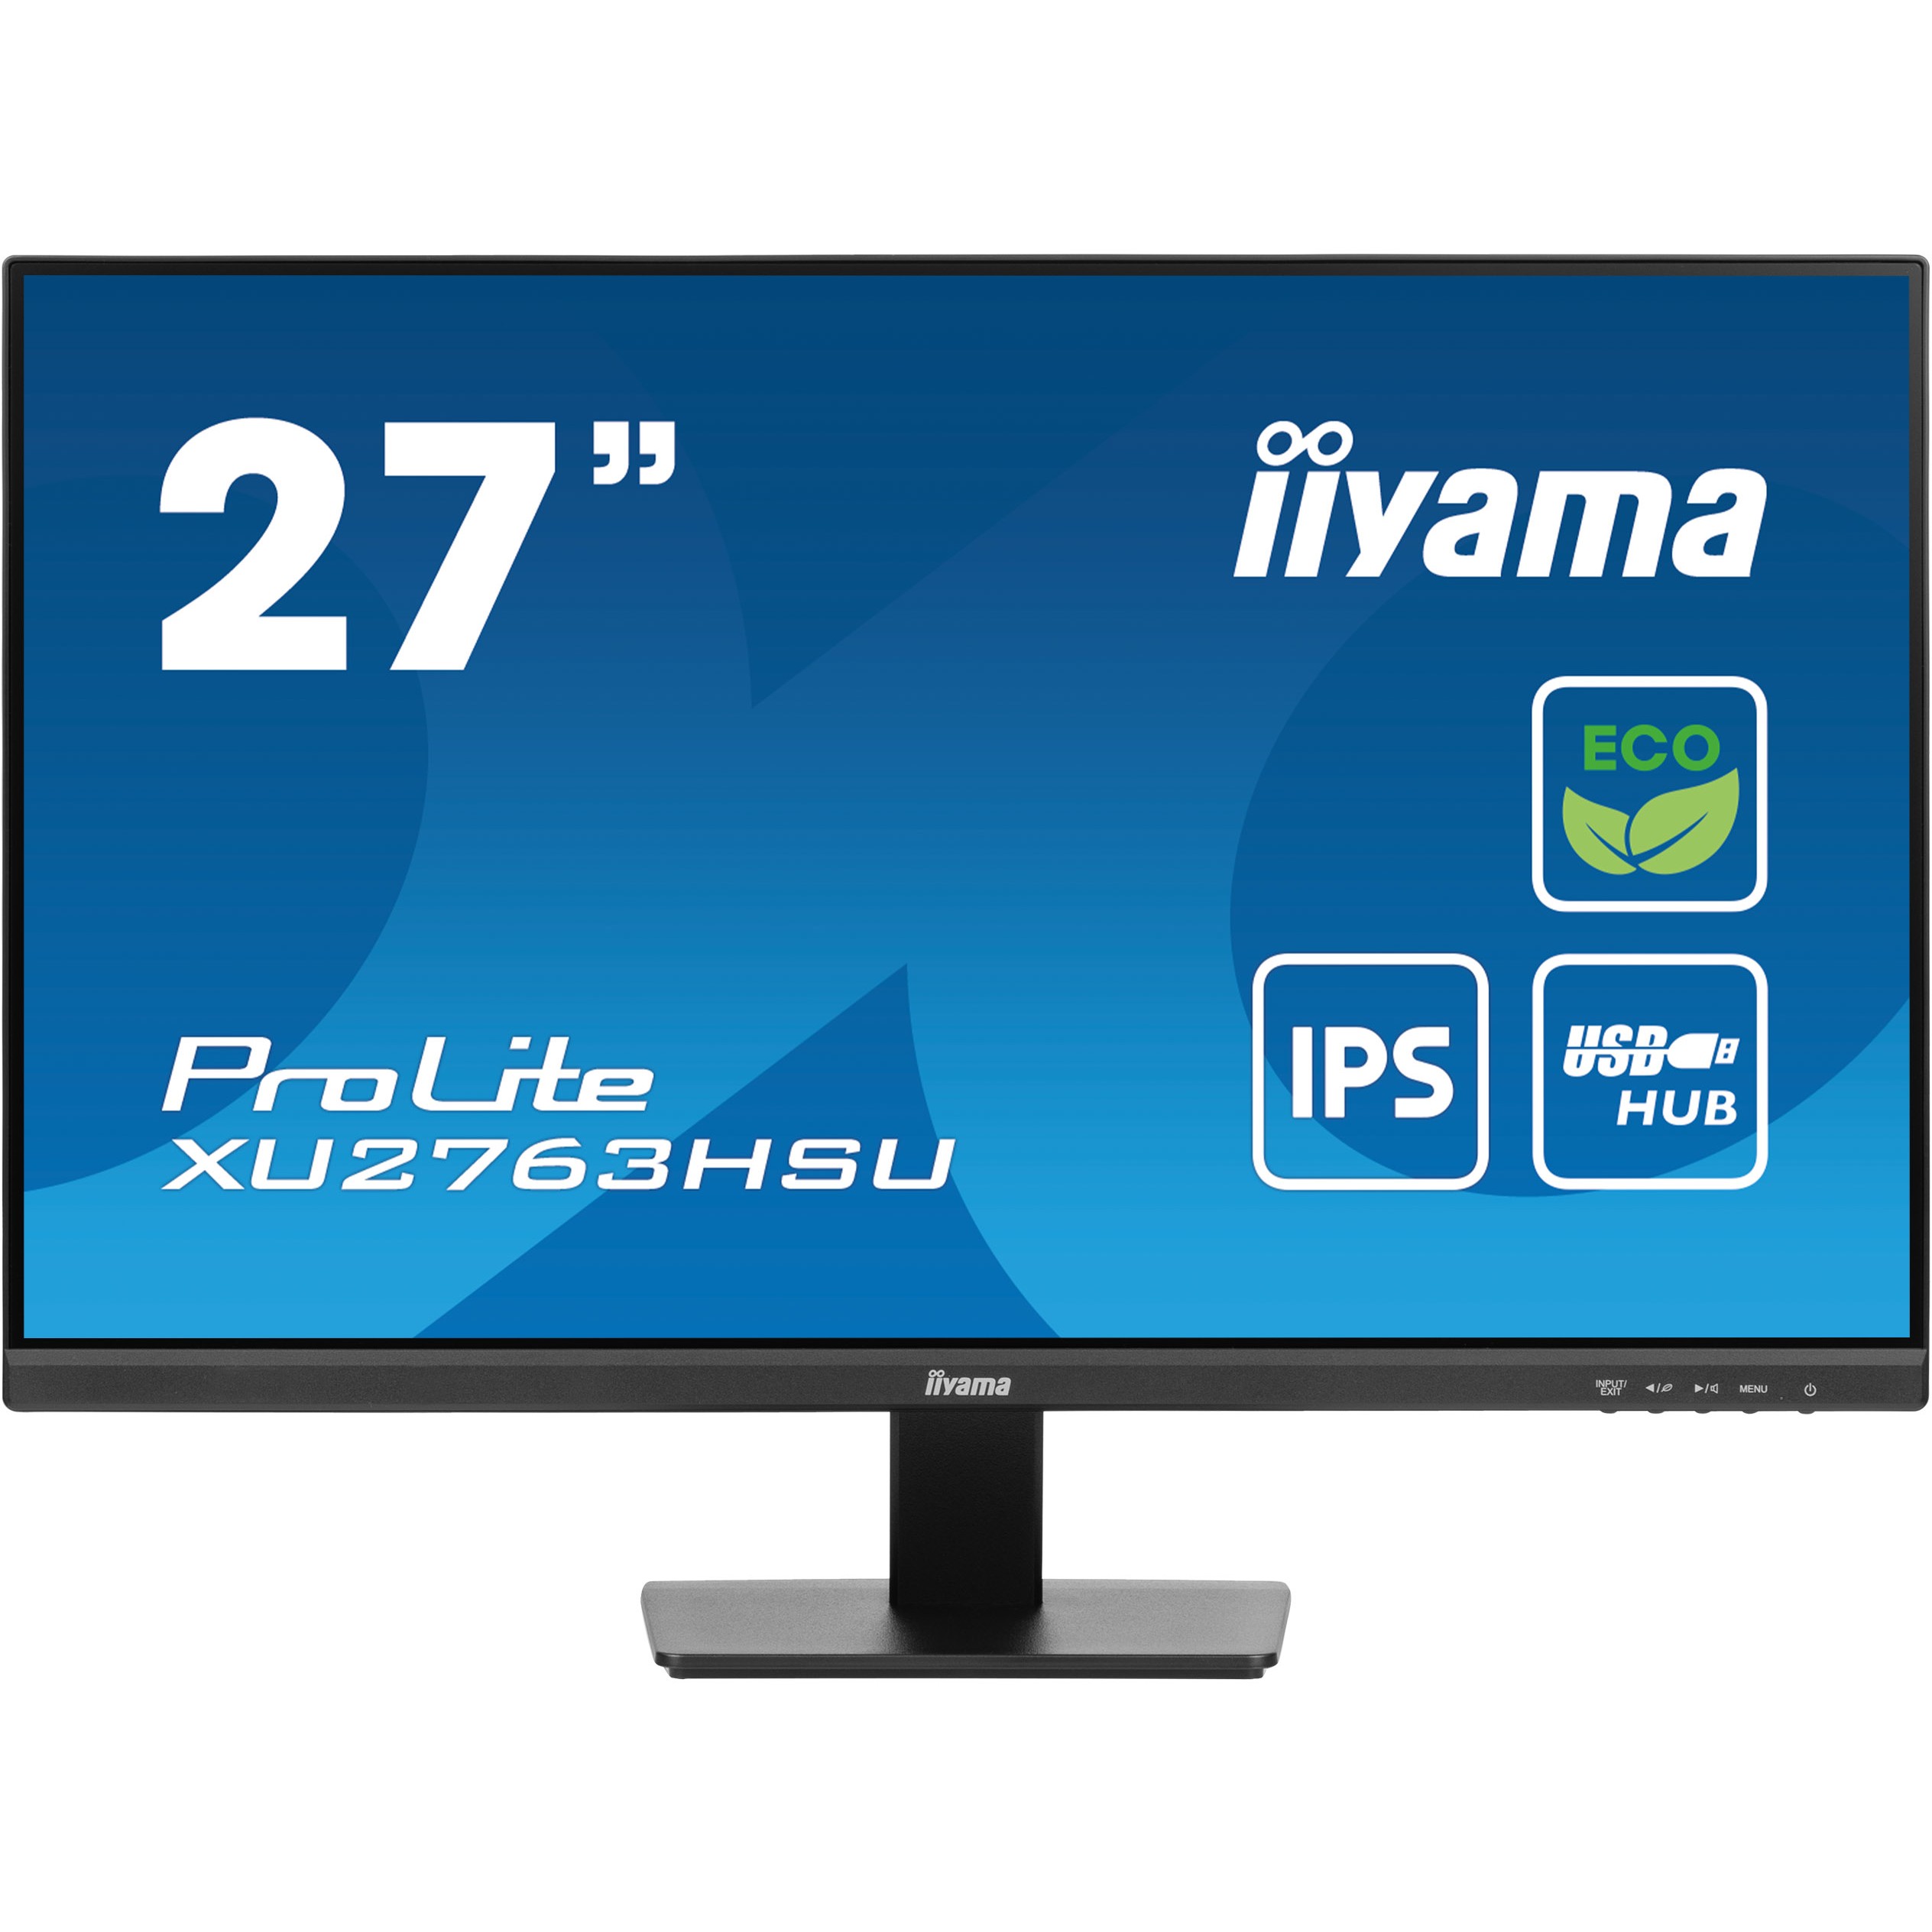 iiyama ProLite XU2763HSU-B1 computer monitor - XU2763HSU-B1